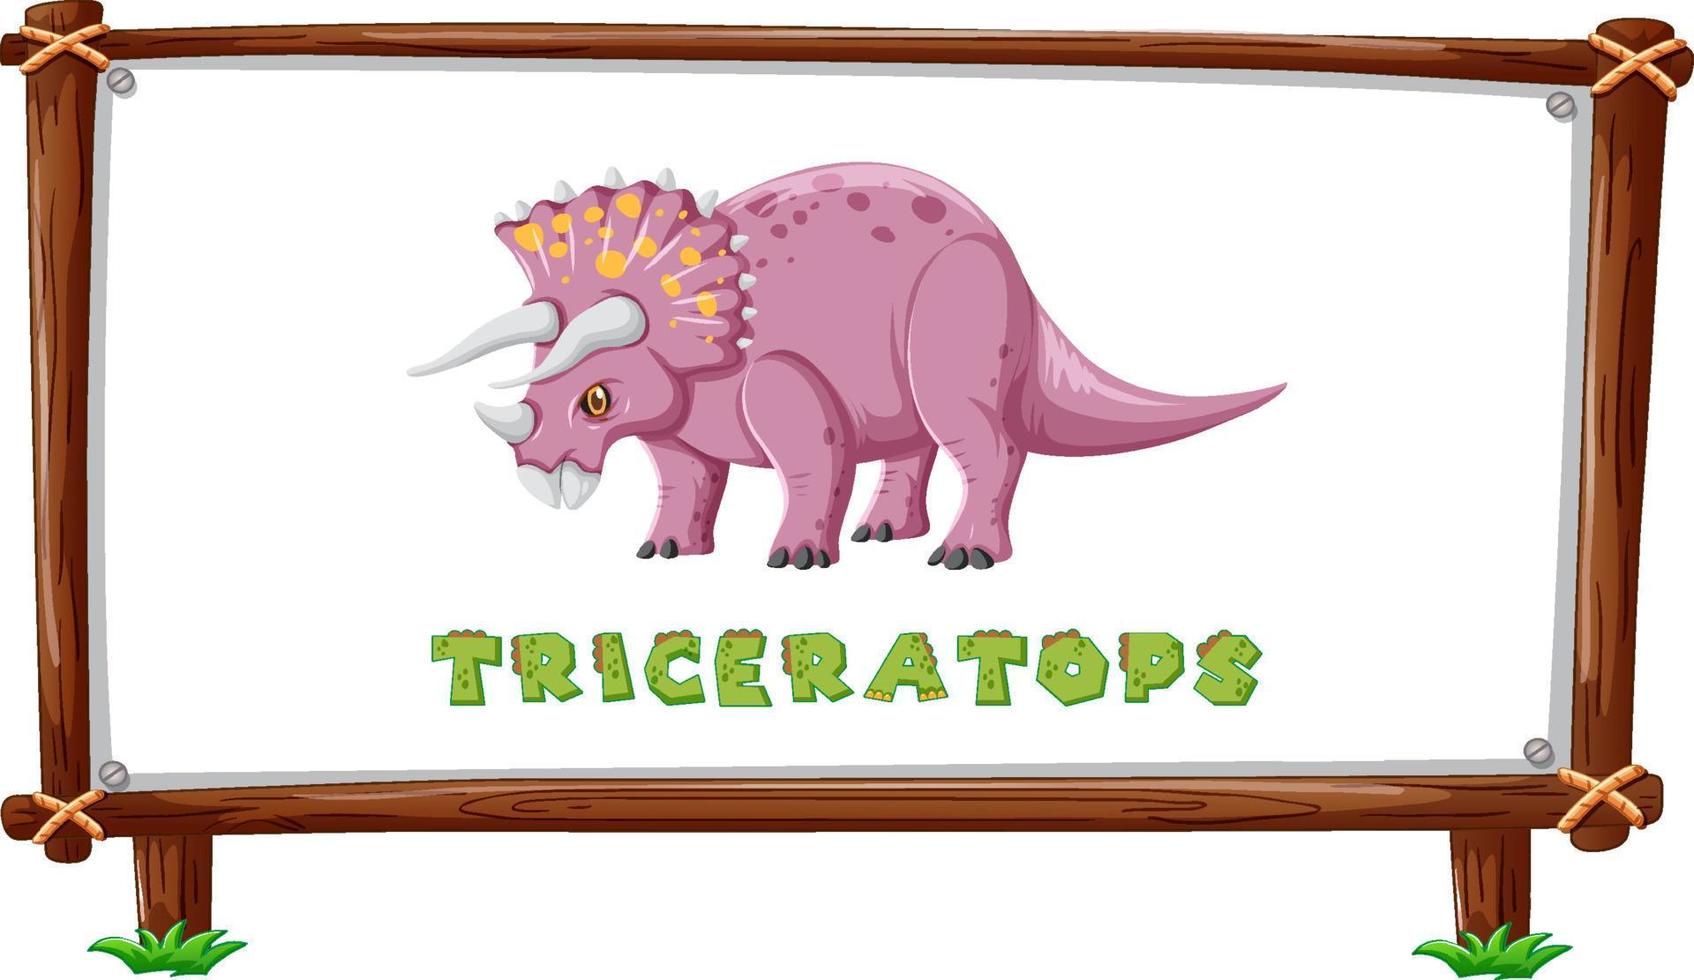 plantilla de marco con dinosaurios y diseño de triceratops de texto dentro vector